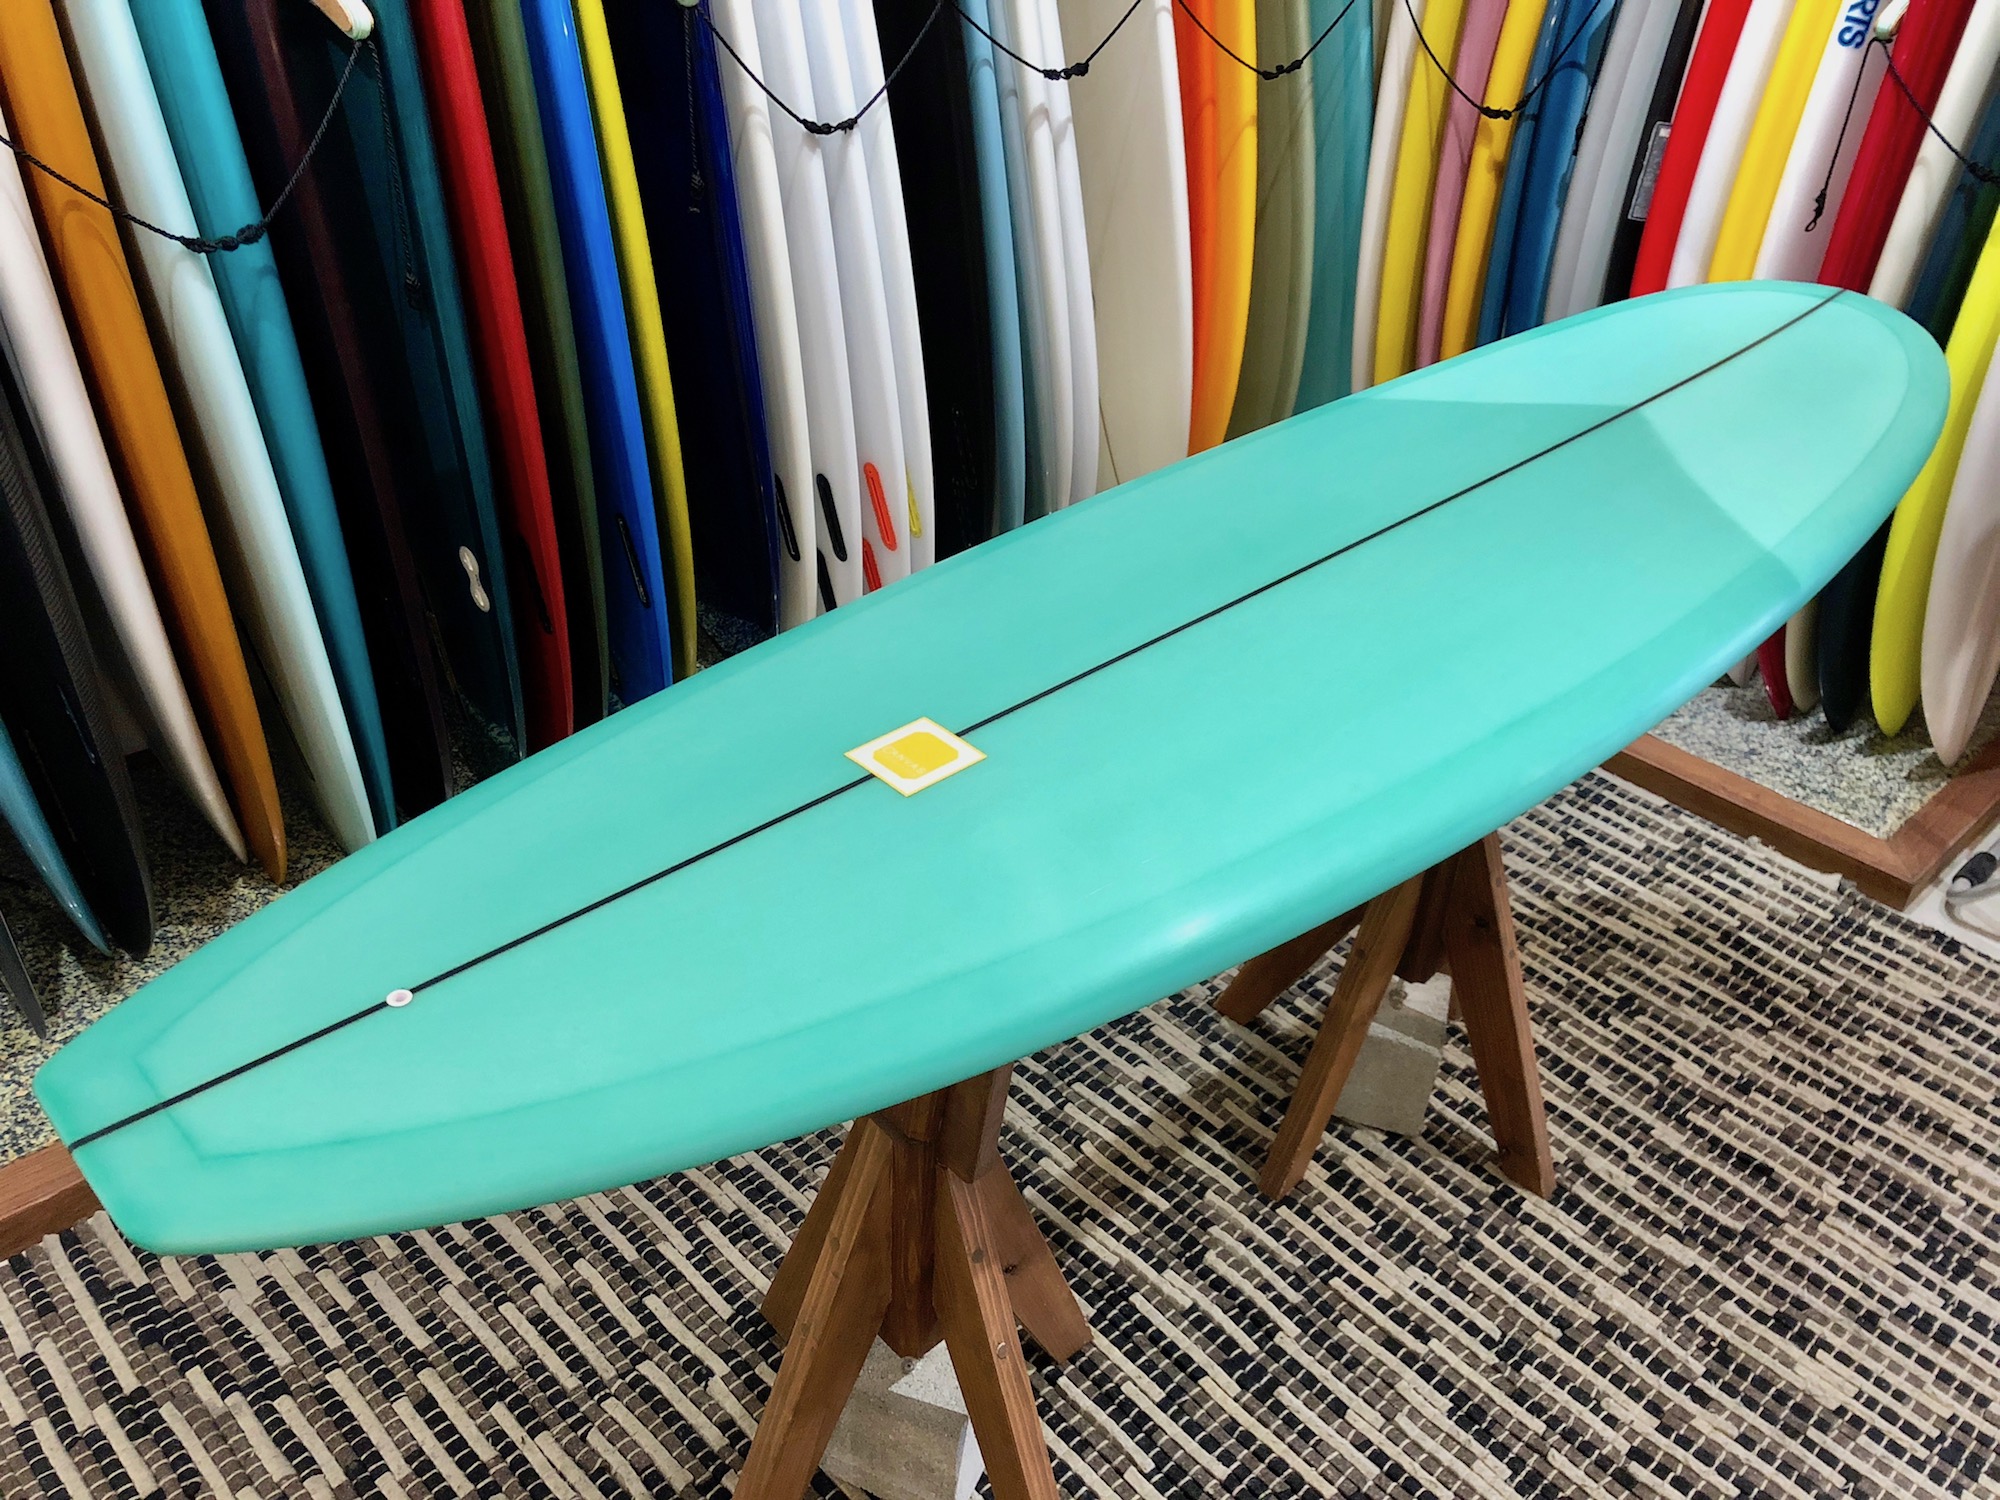 CANVAS MINI NOSERIDER 6.10 |沖縄サーフィンショップ「YES SURF」